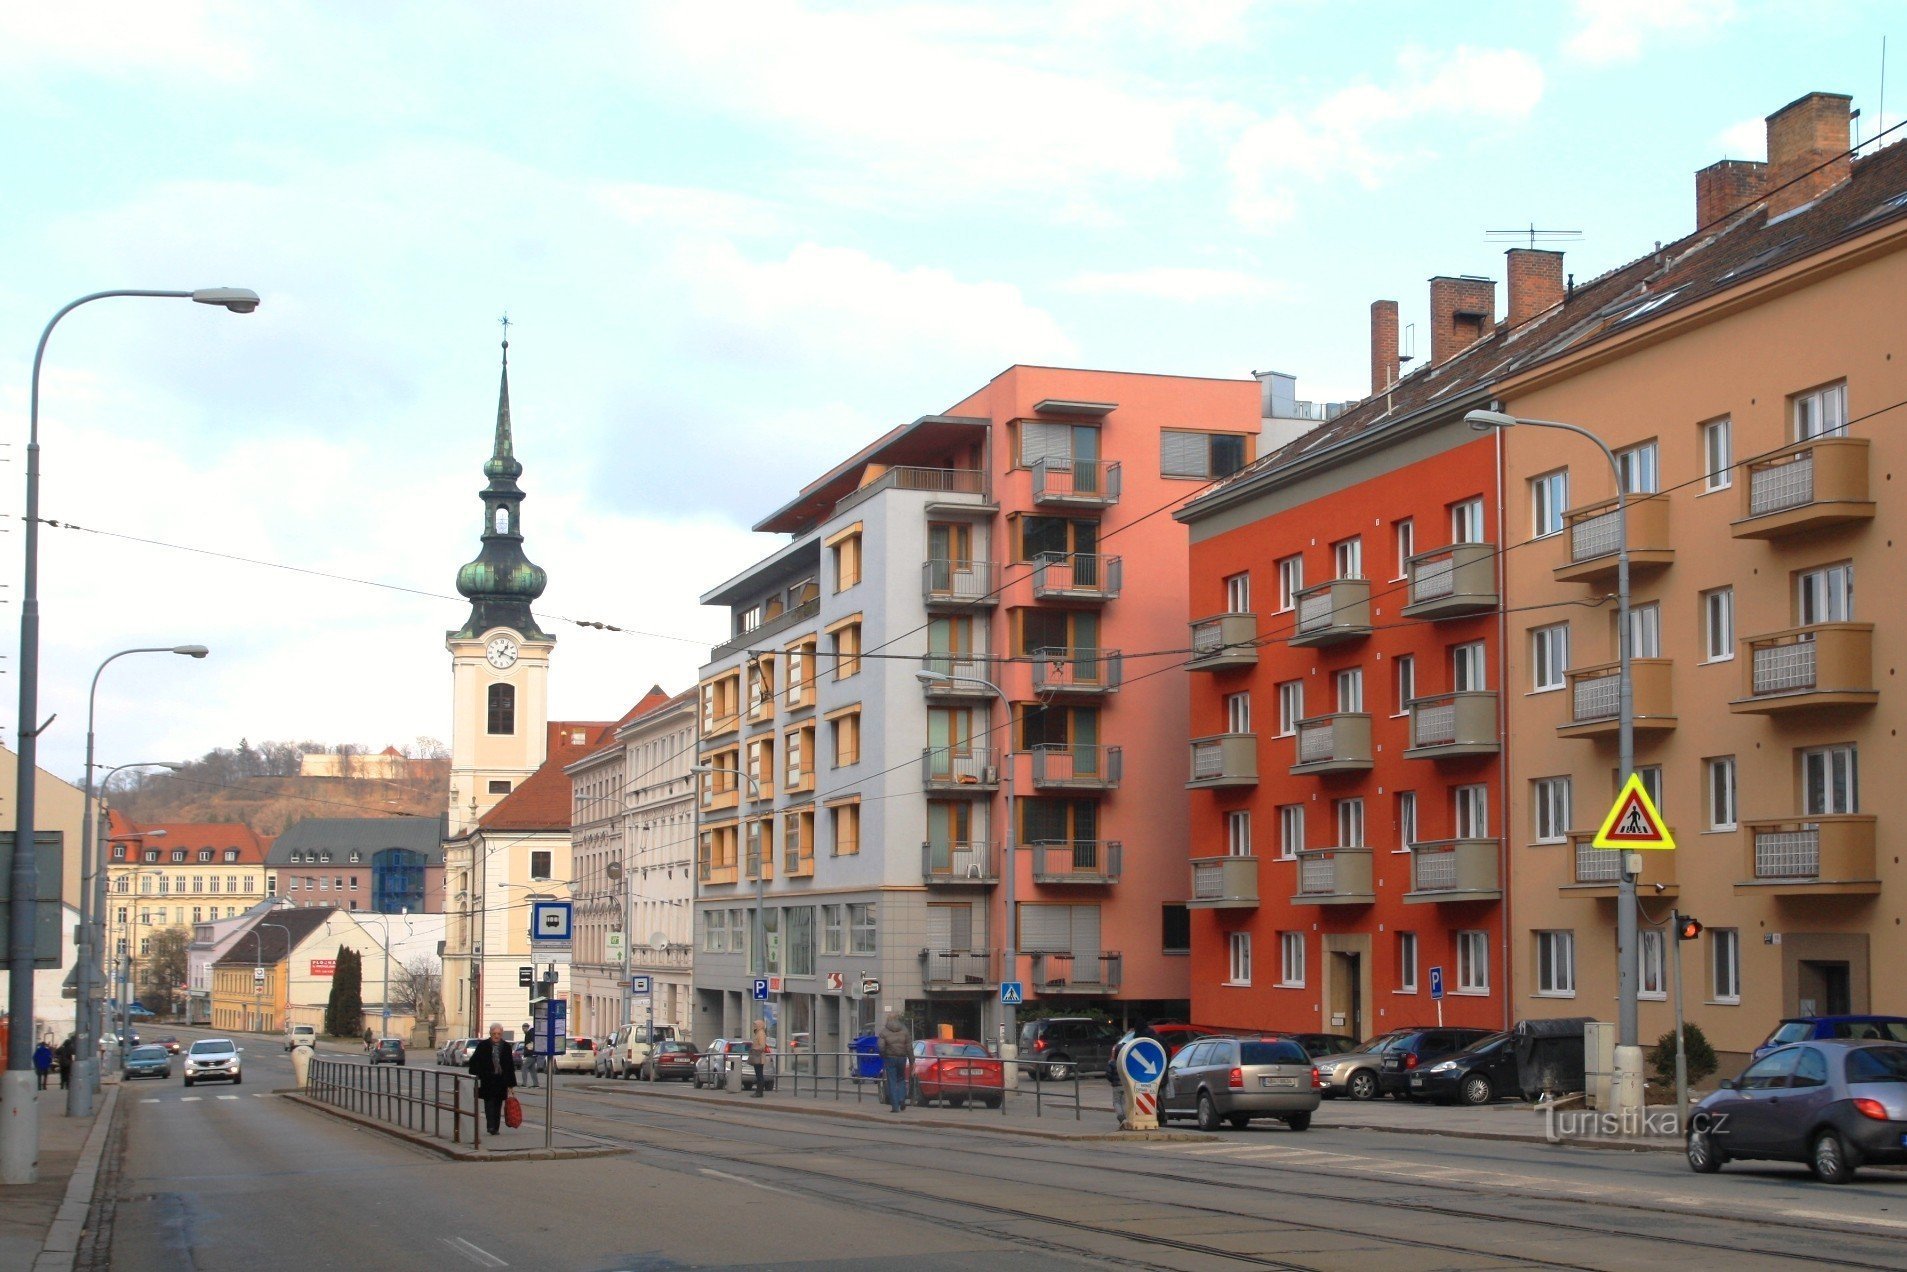 O transporte público dos Irmãos Misericordiosos pára na Rua Vídeňská, ao fundo a torre da Igreja de S. Leopoldo